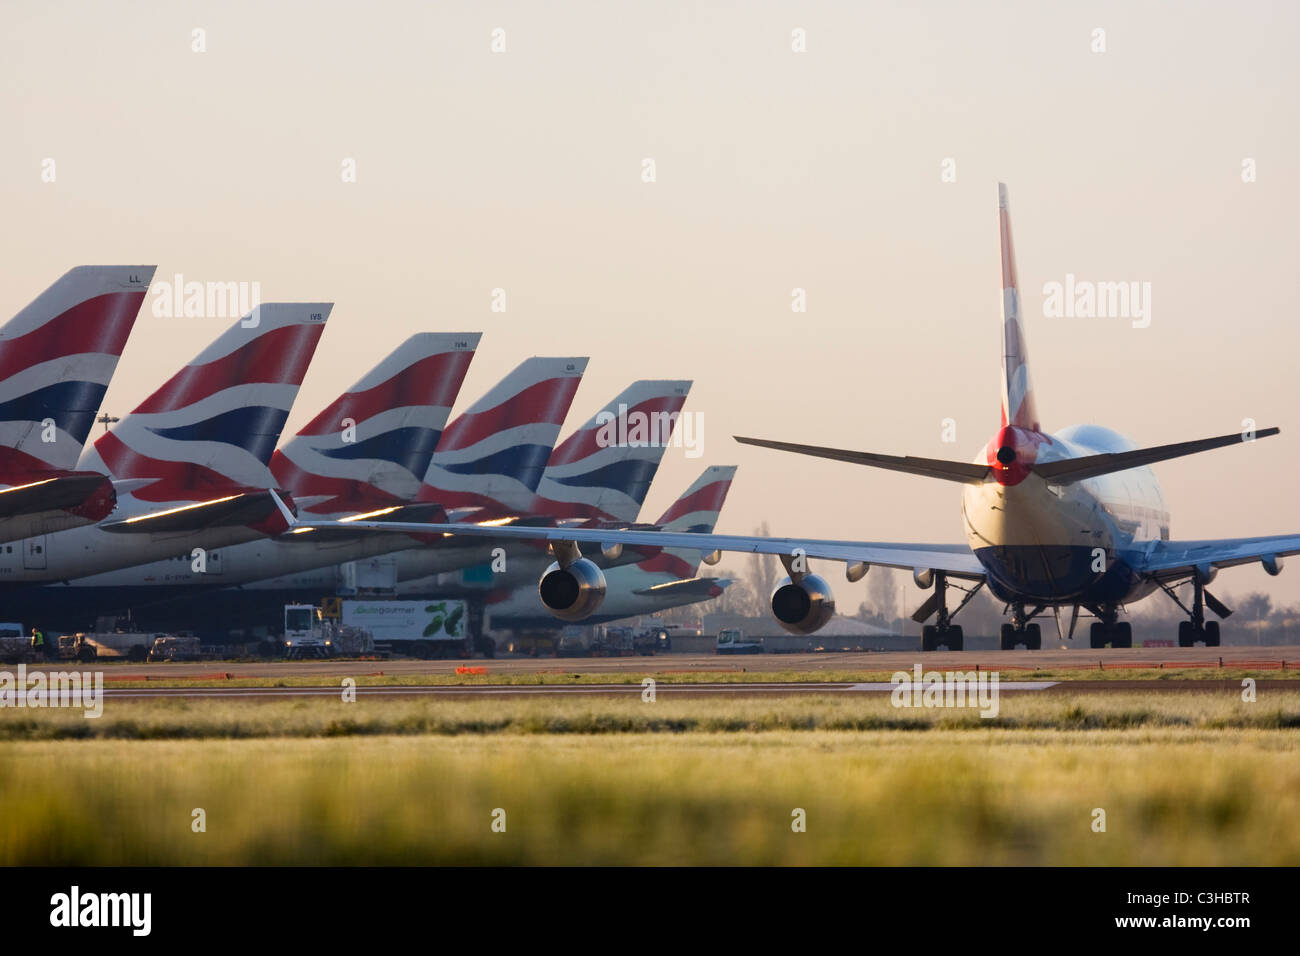 Flotta di British Airways aerei di linea all'Aeroporto Heathrow di Londra REGNO UNITO Foto Stock